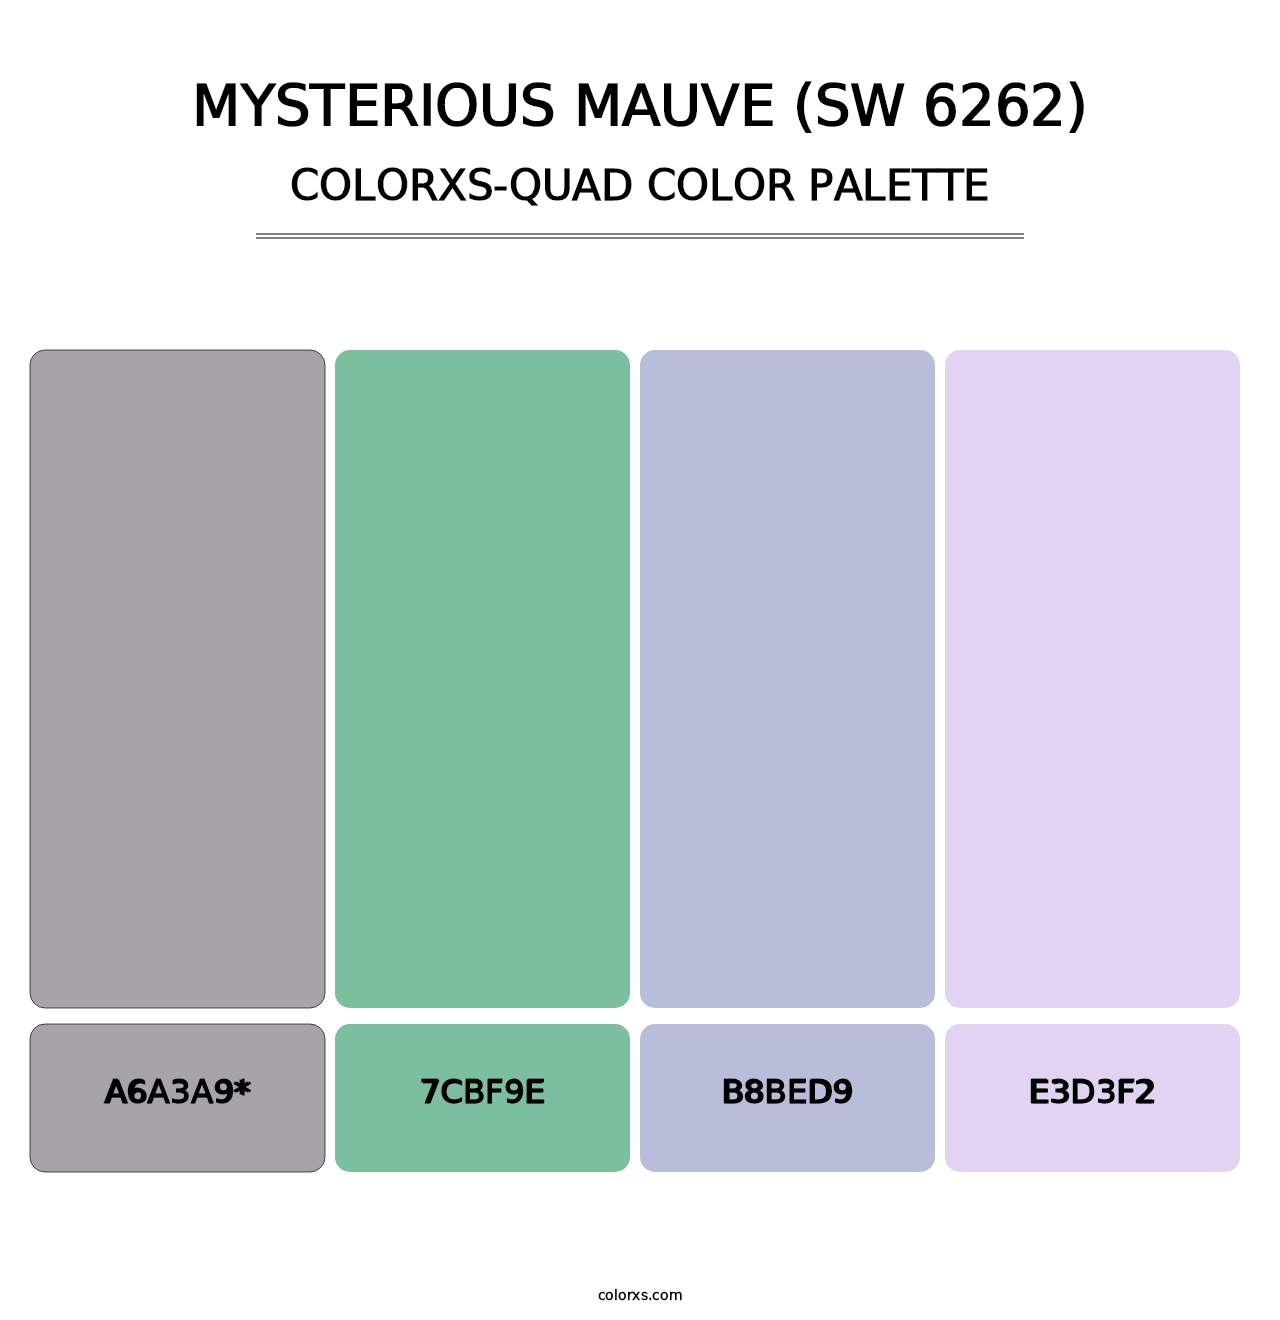 Mysterious Mauve (SW 6262) - Colorxs Quad Palette